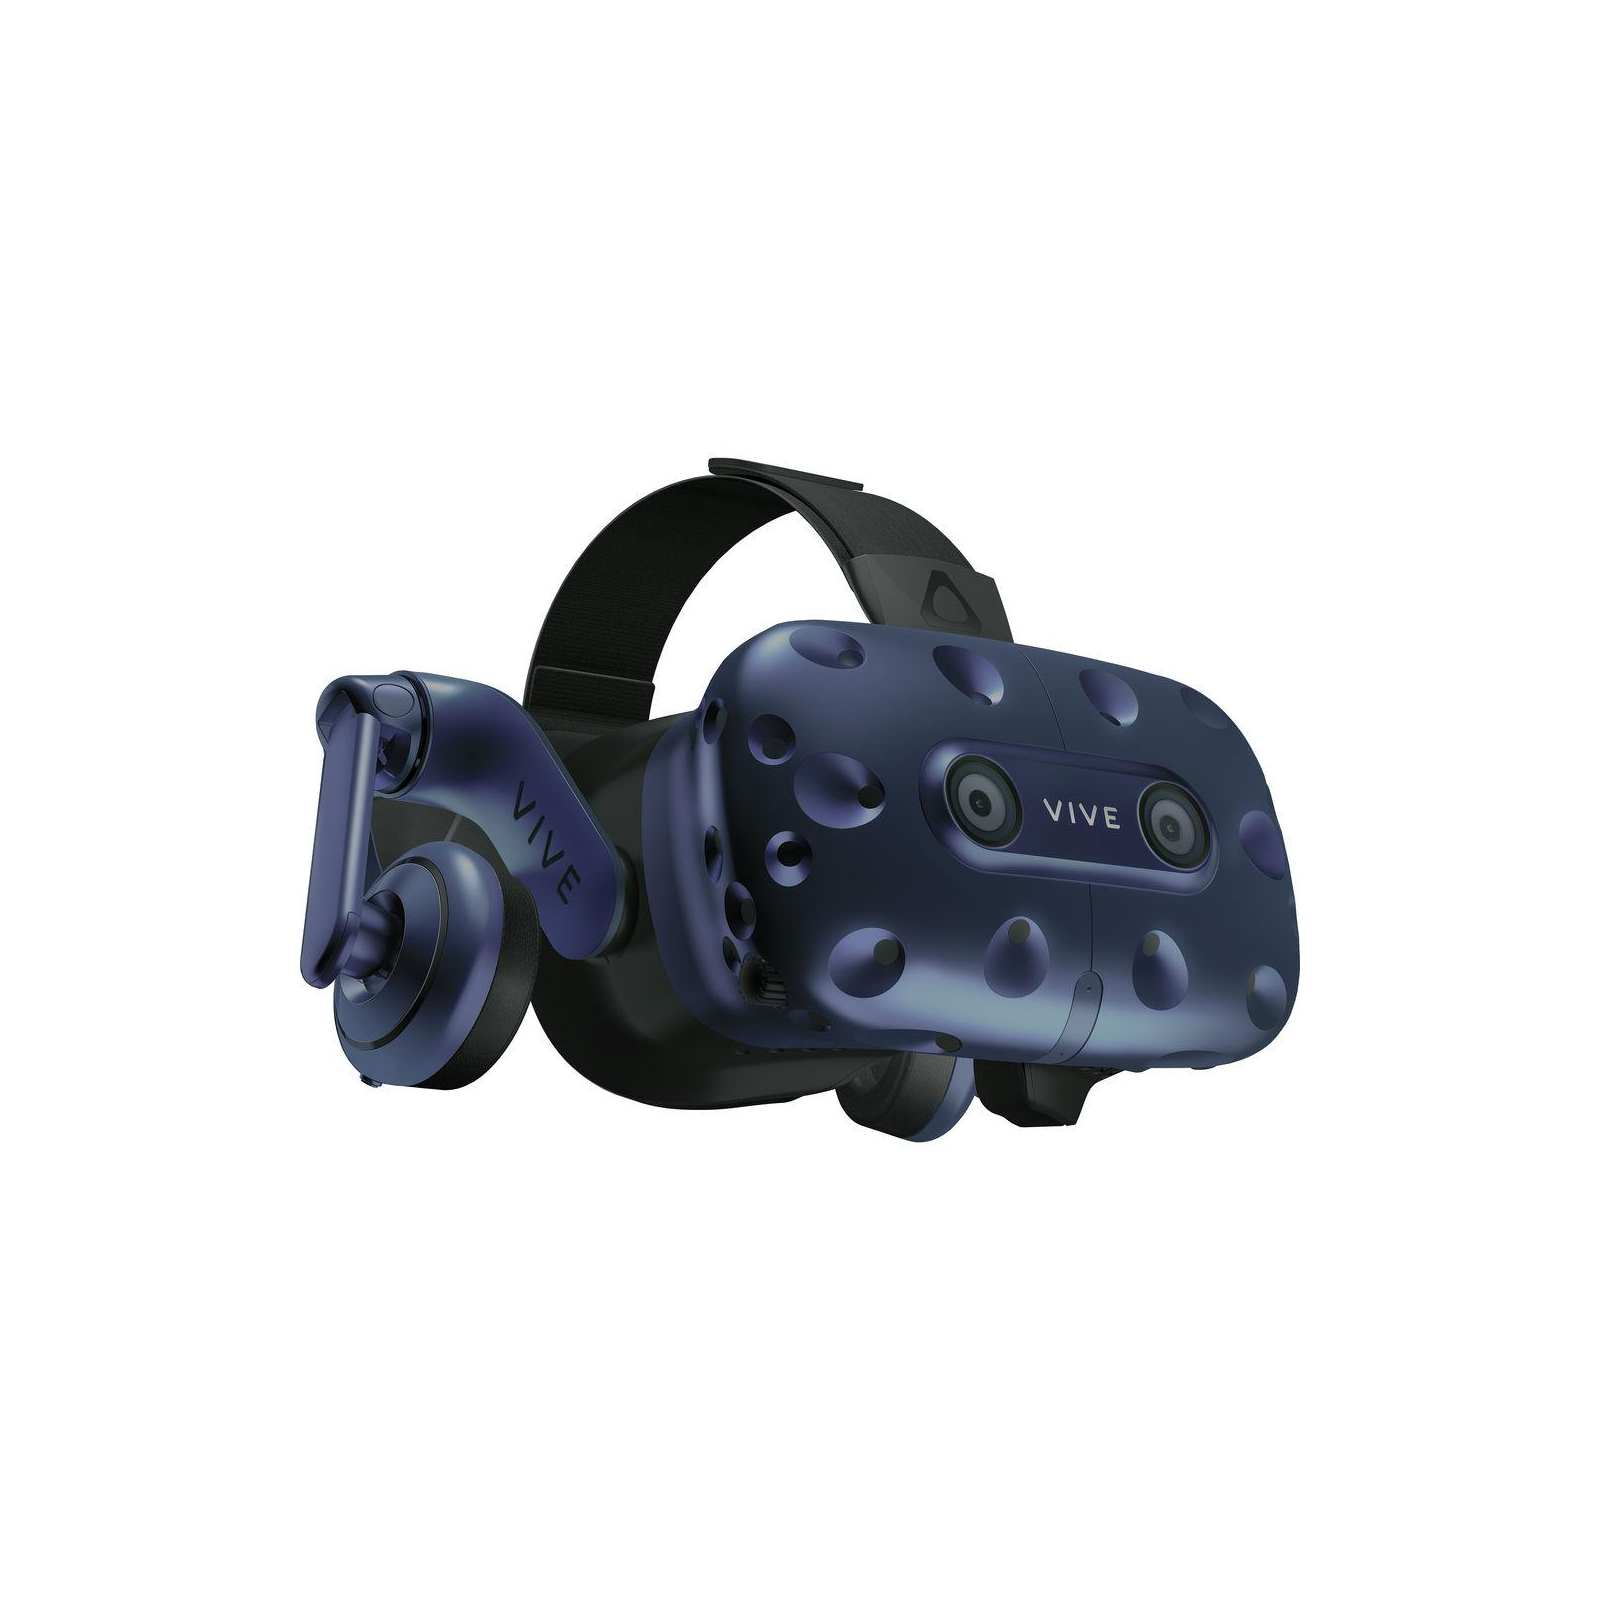 Окуляри віртуальної реальності HTC VIVE PRO KIT (2.0) Blue-Black (99HANW006-00) зображення 3